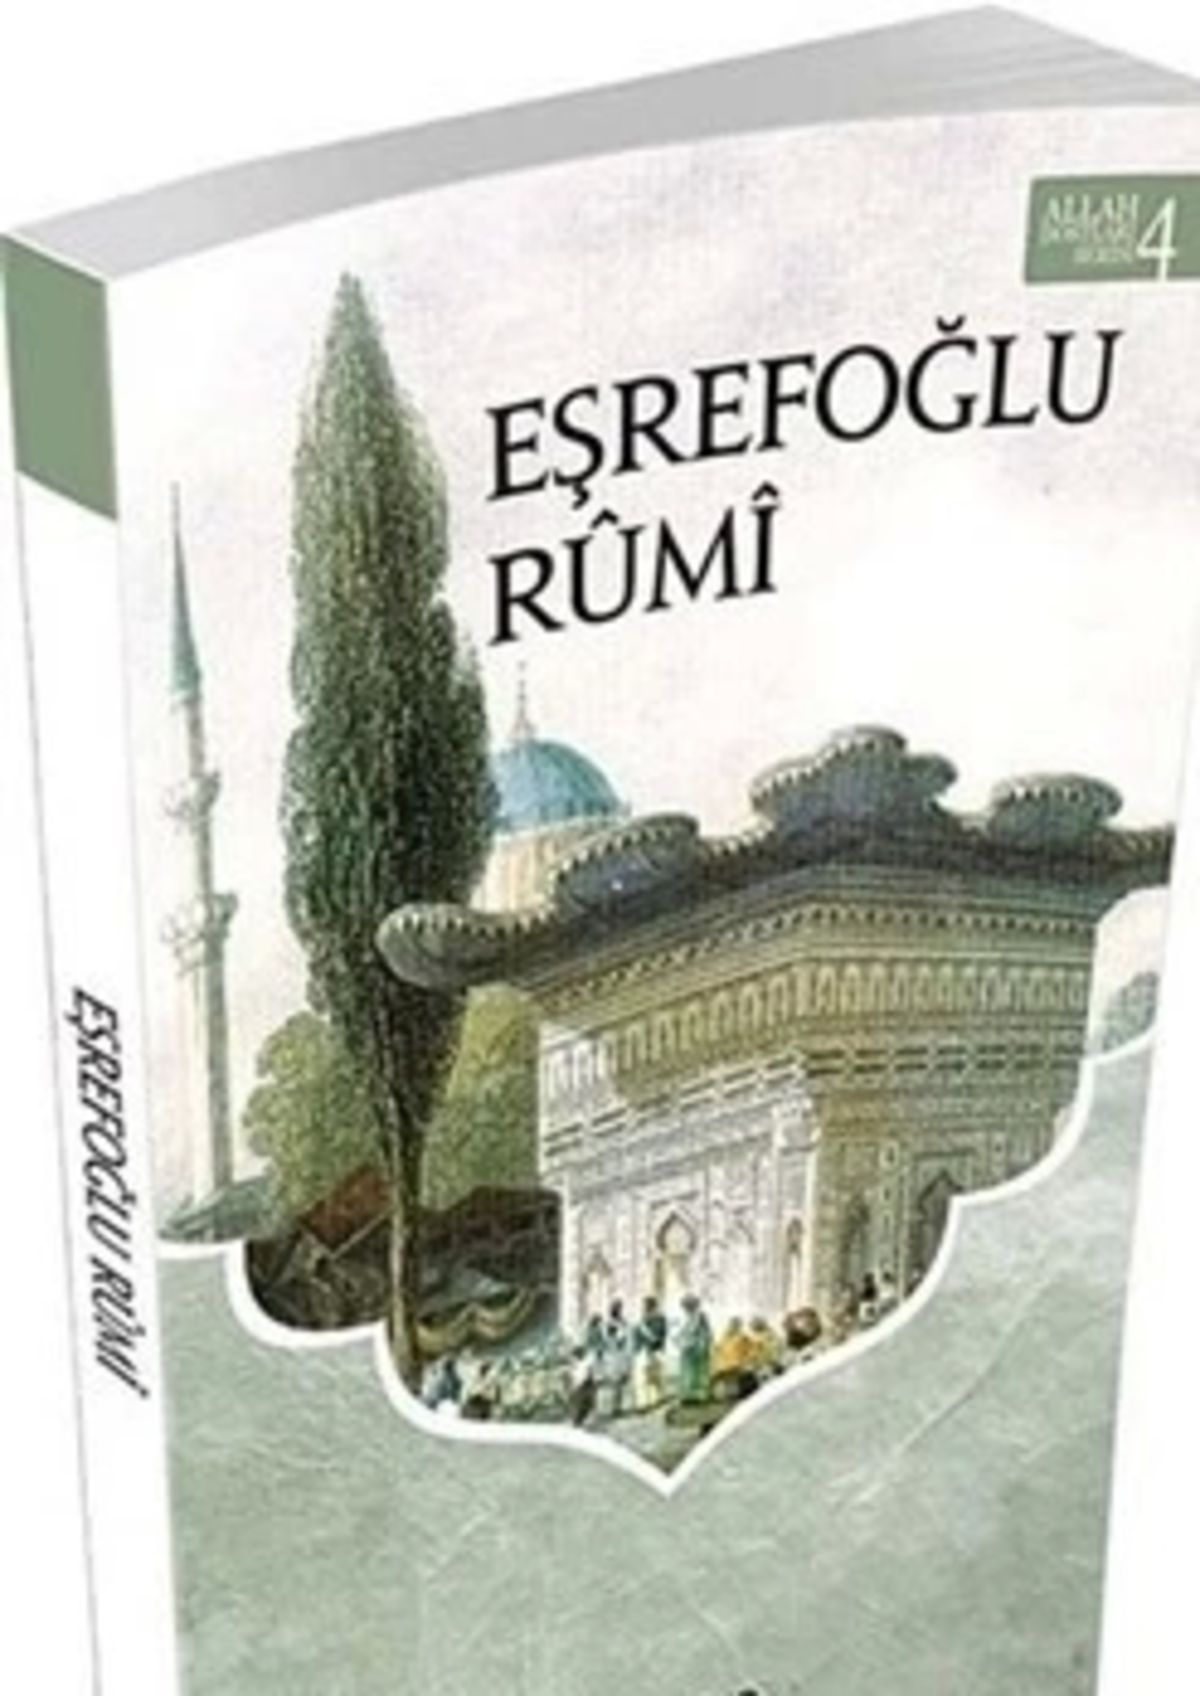 Semerkand Yayınları Eşrefoğlu Rumi